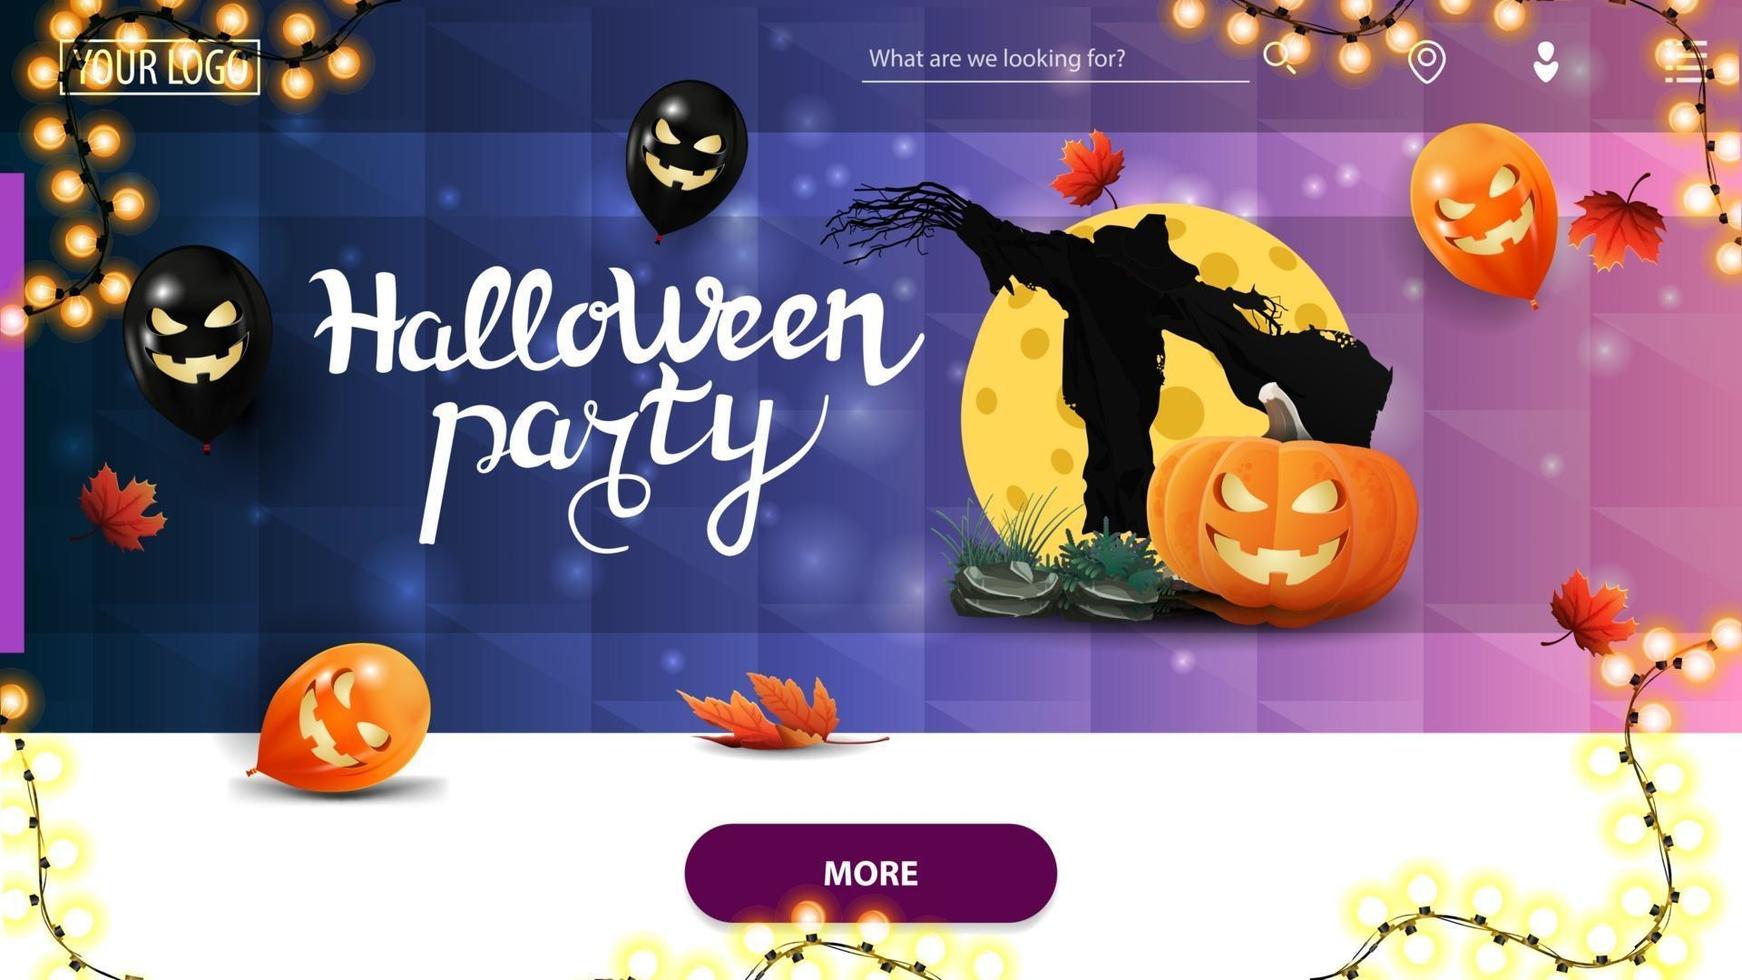 fête d'halloween, bannière d'invitation horizontale pour le site Web de la page d'accueil avec texture polygonale bleue, ballons d'halloween, épouvantail et citrouille contre la lune vecteur